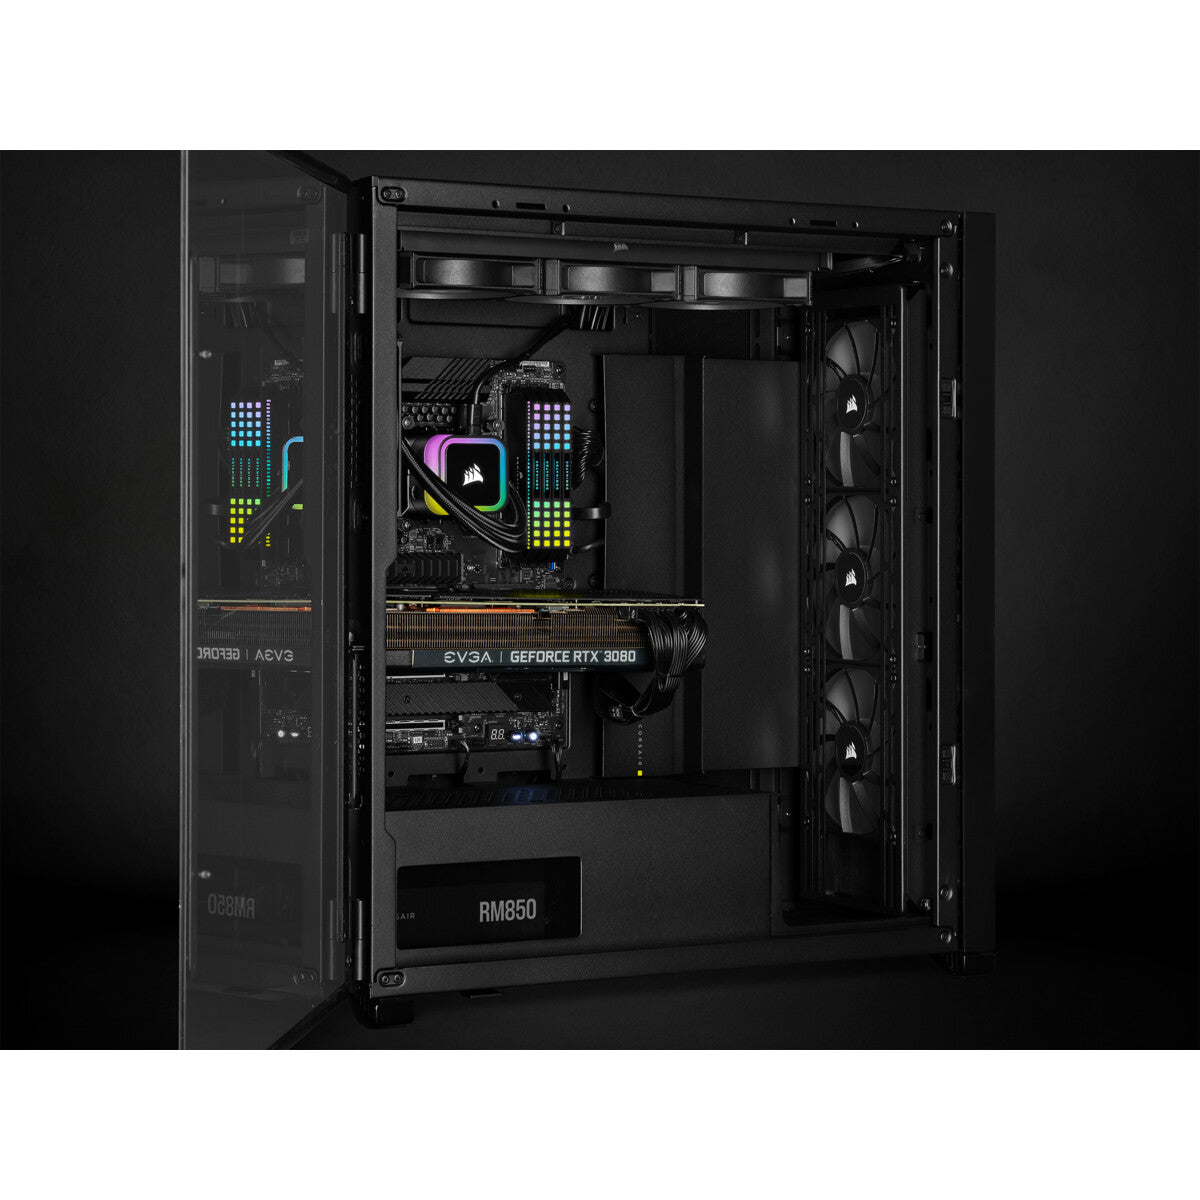 Corsair iCUE H150i RGB ELITE - All-in-one Liquid Processor Cooler in Black - 360mm